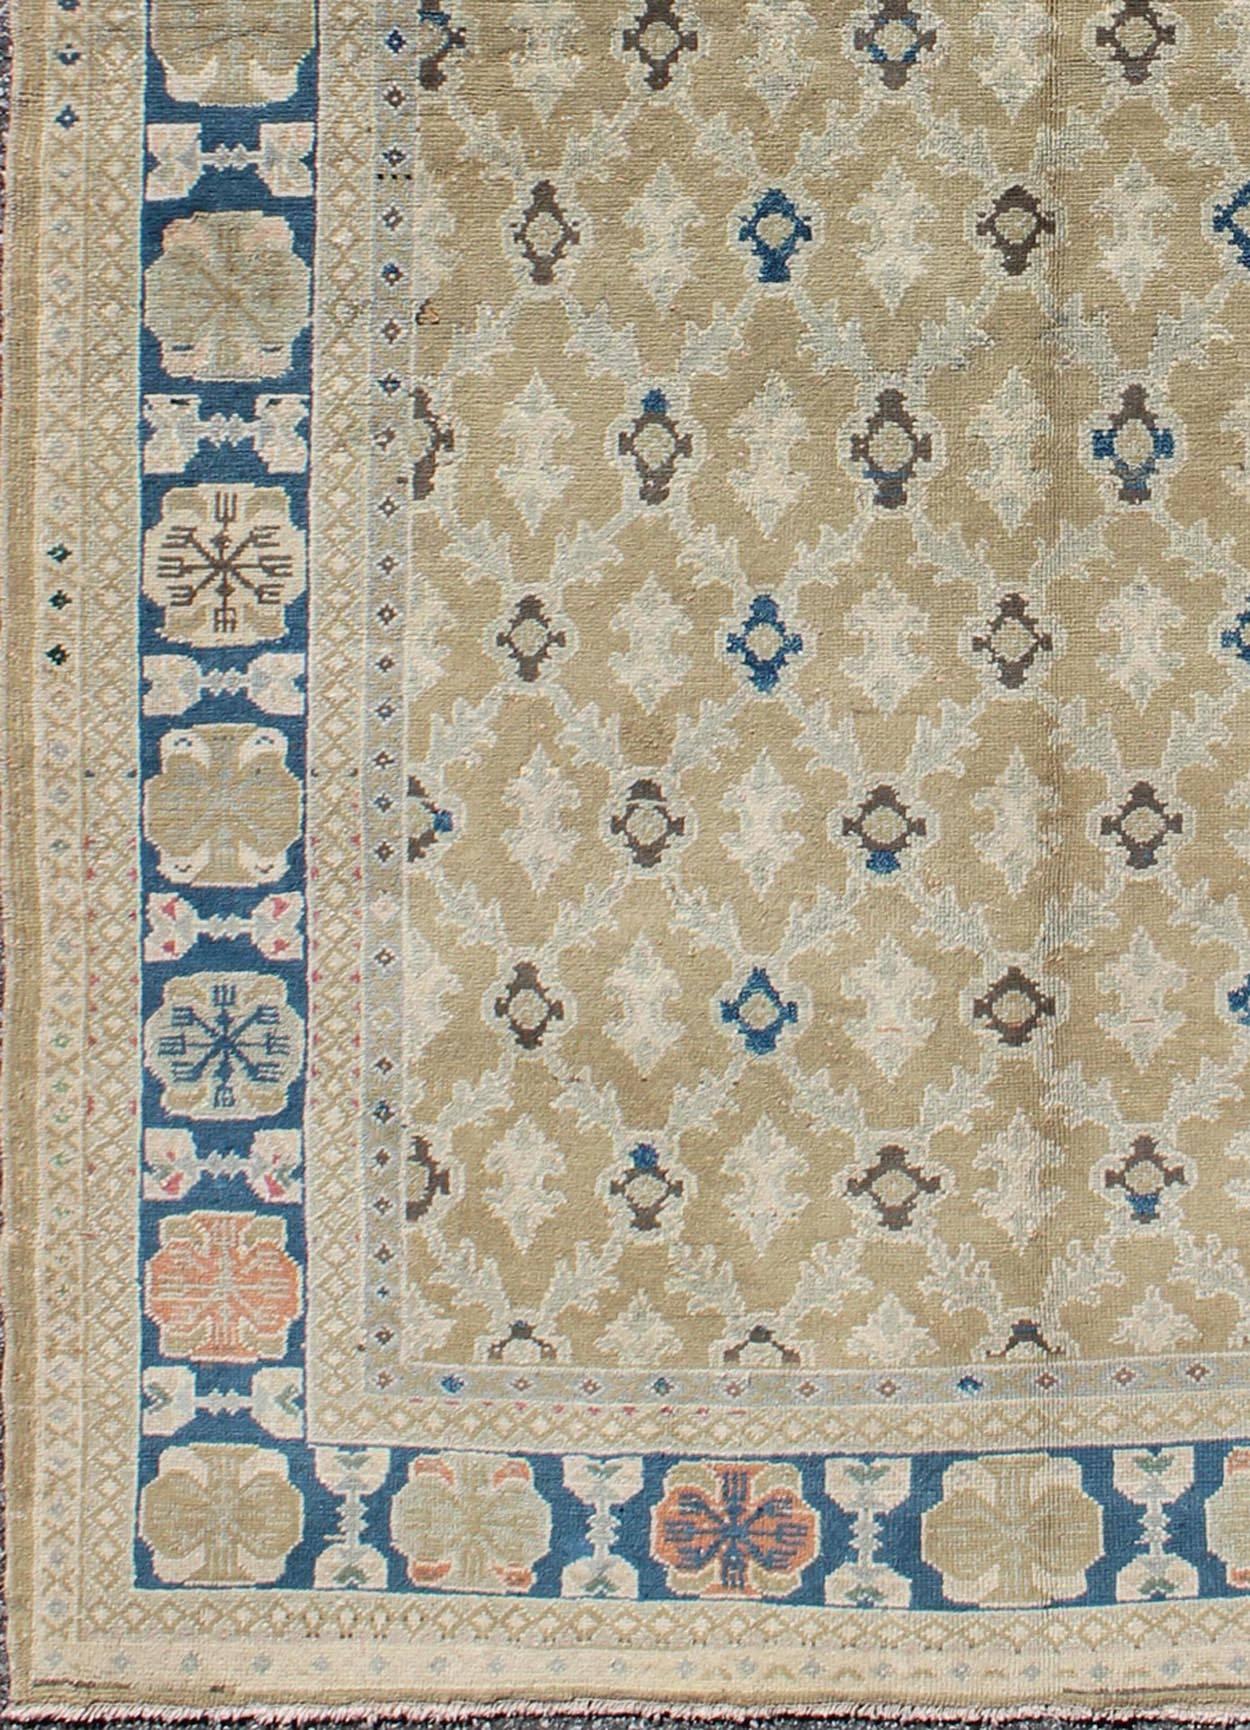 Feiner türkischer Sivas-Teppich mit geometrischem Muster in den Farben Tan, Taupe, Blau und Braun.
Dieser einzigartige Vintage-Sivas ist ein außergewöhnliches Kunstwerk und zeichnet sich durch seine tief empfundene Farbpalette aus Blau, Stroh und